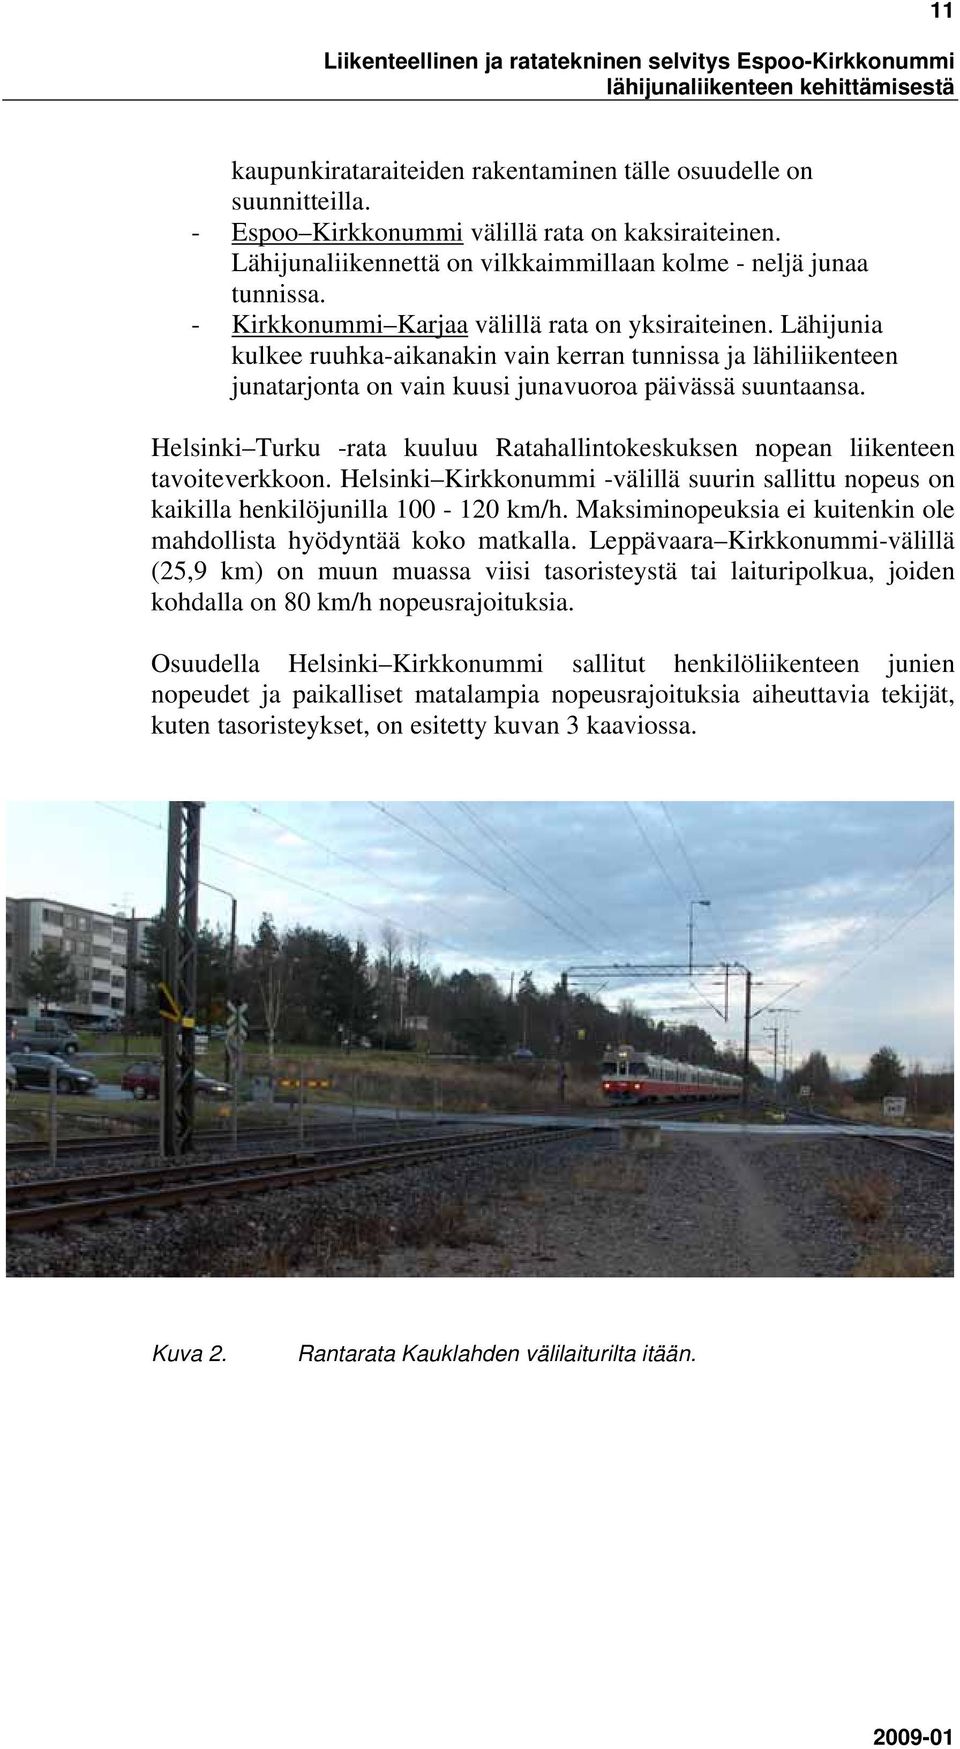 Helsinki Turku -rata kuuluu Ratahallintokeskuksen nopean liikenteen tavoiteverkkoon. Helsinki Kirkkonummi -välillä suurin sallittu nopeus on kaikilla henkilöjunilla 100-120 km/h.